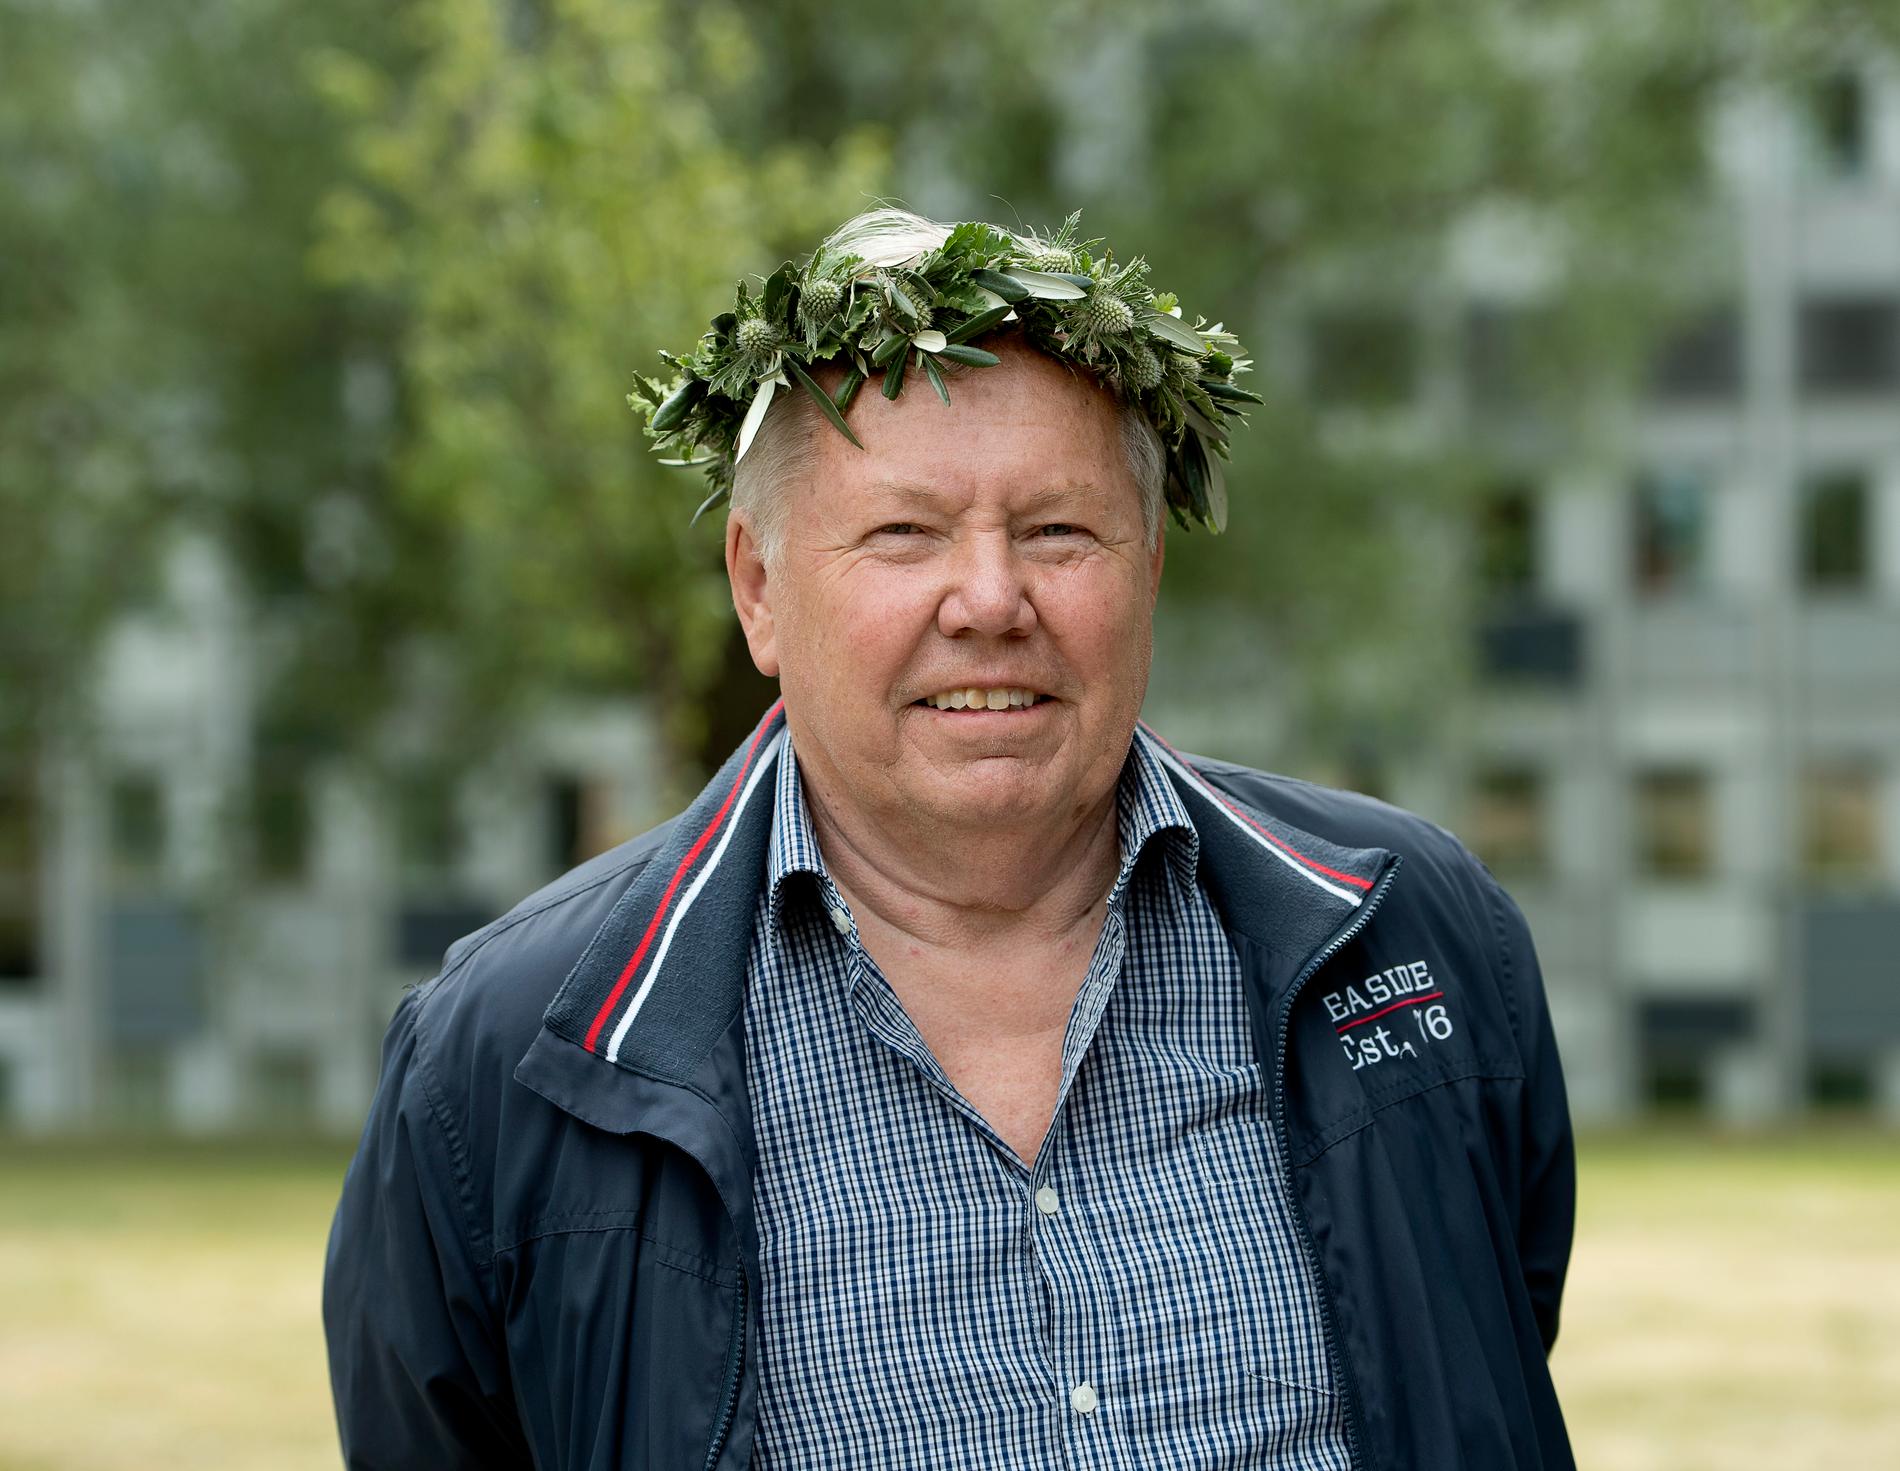 Självbelåtet gav Bert Karlsson en serieentreprenörens Höga visan när han debuterade i ”Sommar i P1”, skriver Staffan Heimerson.